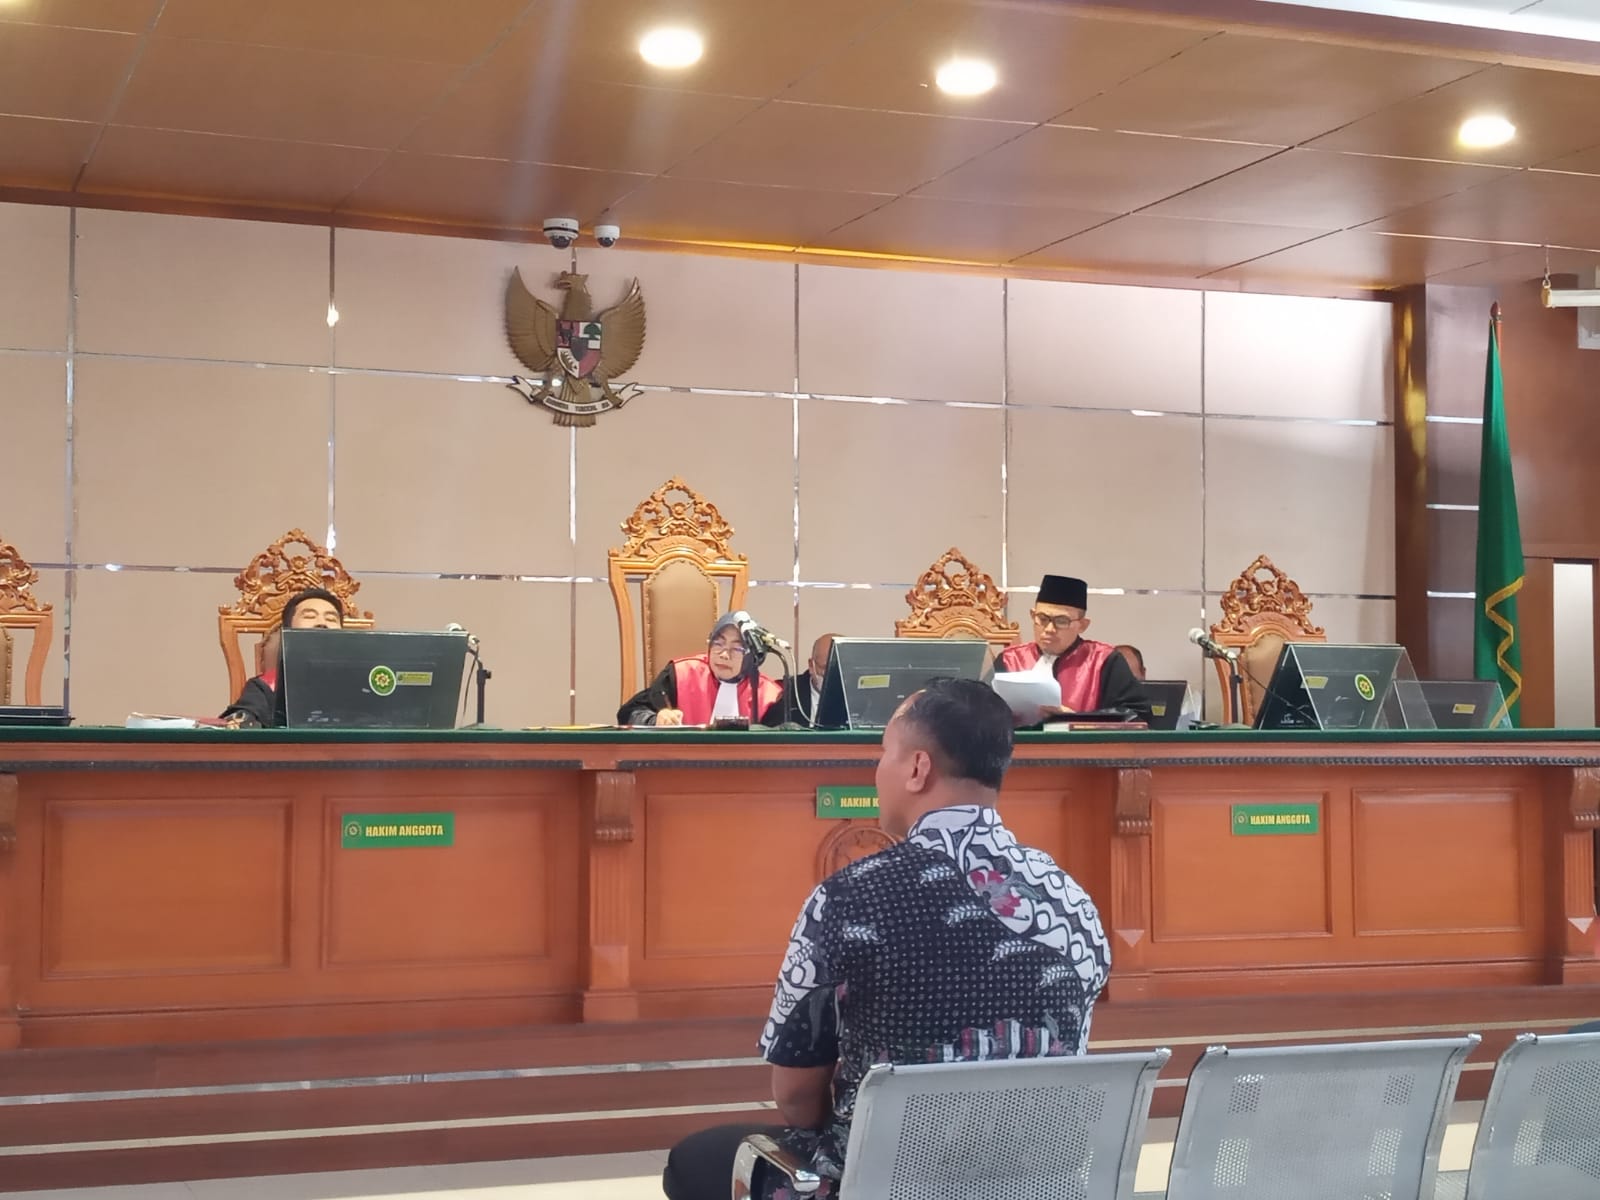 Carut Marut Administratif Dishub Kota Bandung, Dimas Ungkap CC Room Sudah Dikerjakan Tahun 2022 Tapi Kontrak Kerja Baru Muncul 2023